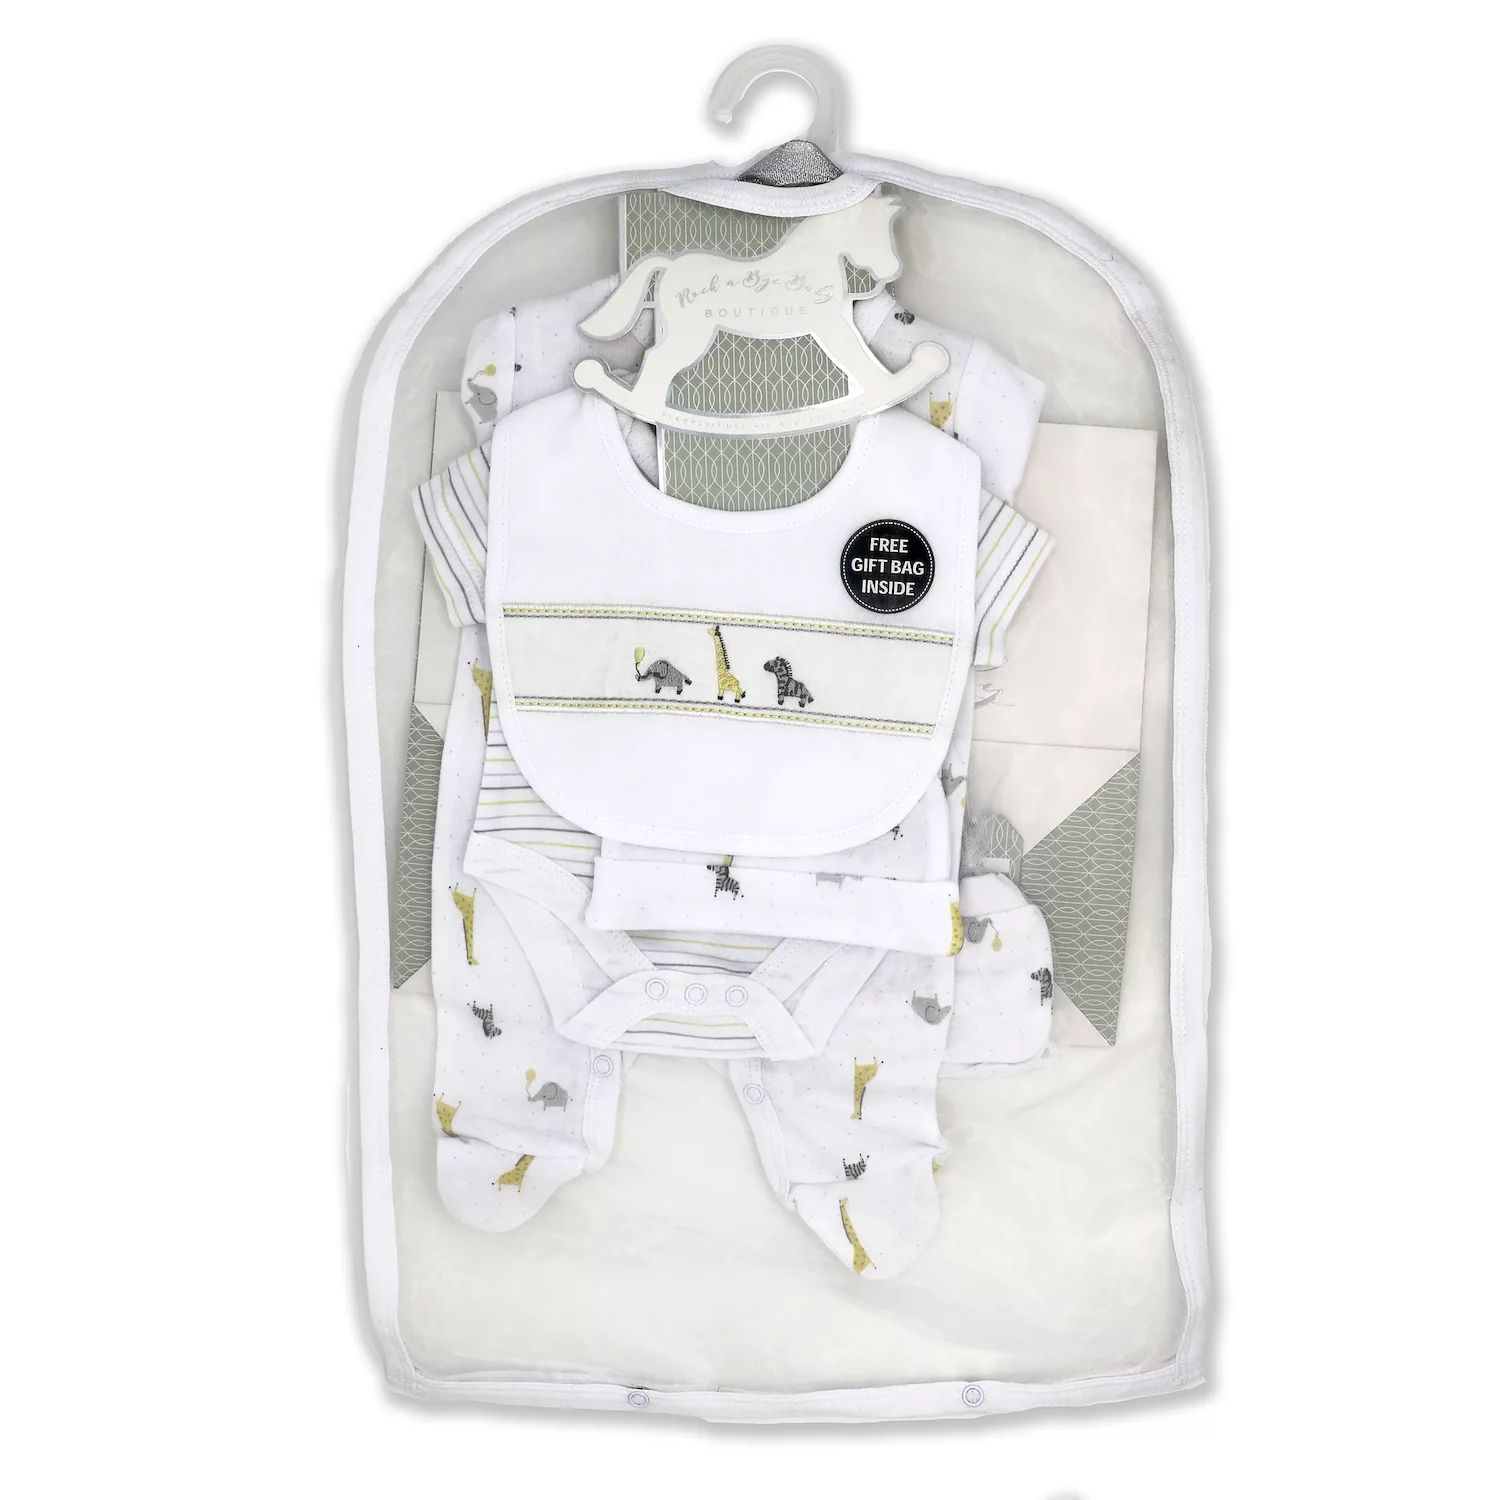 bye bye paris mother baby care bag hi̇gh quality warranty period month 12 Подарочный набор из 5 предметов в сетчатой ​​сумке для мальчиков и девочек с африканскими животными Rock A Bye Baby Boutique